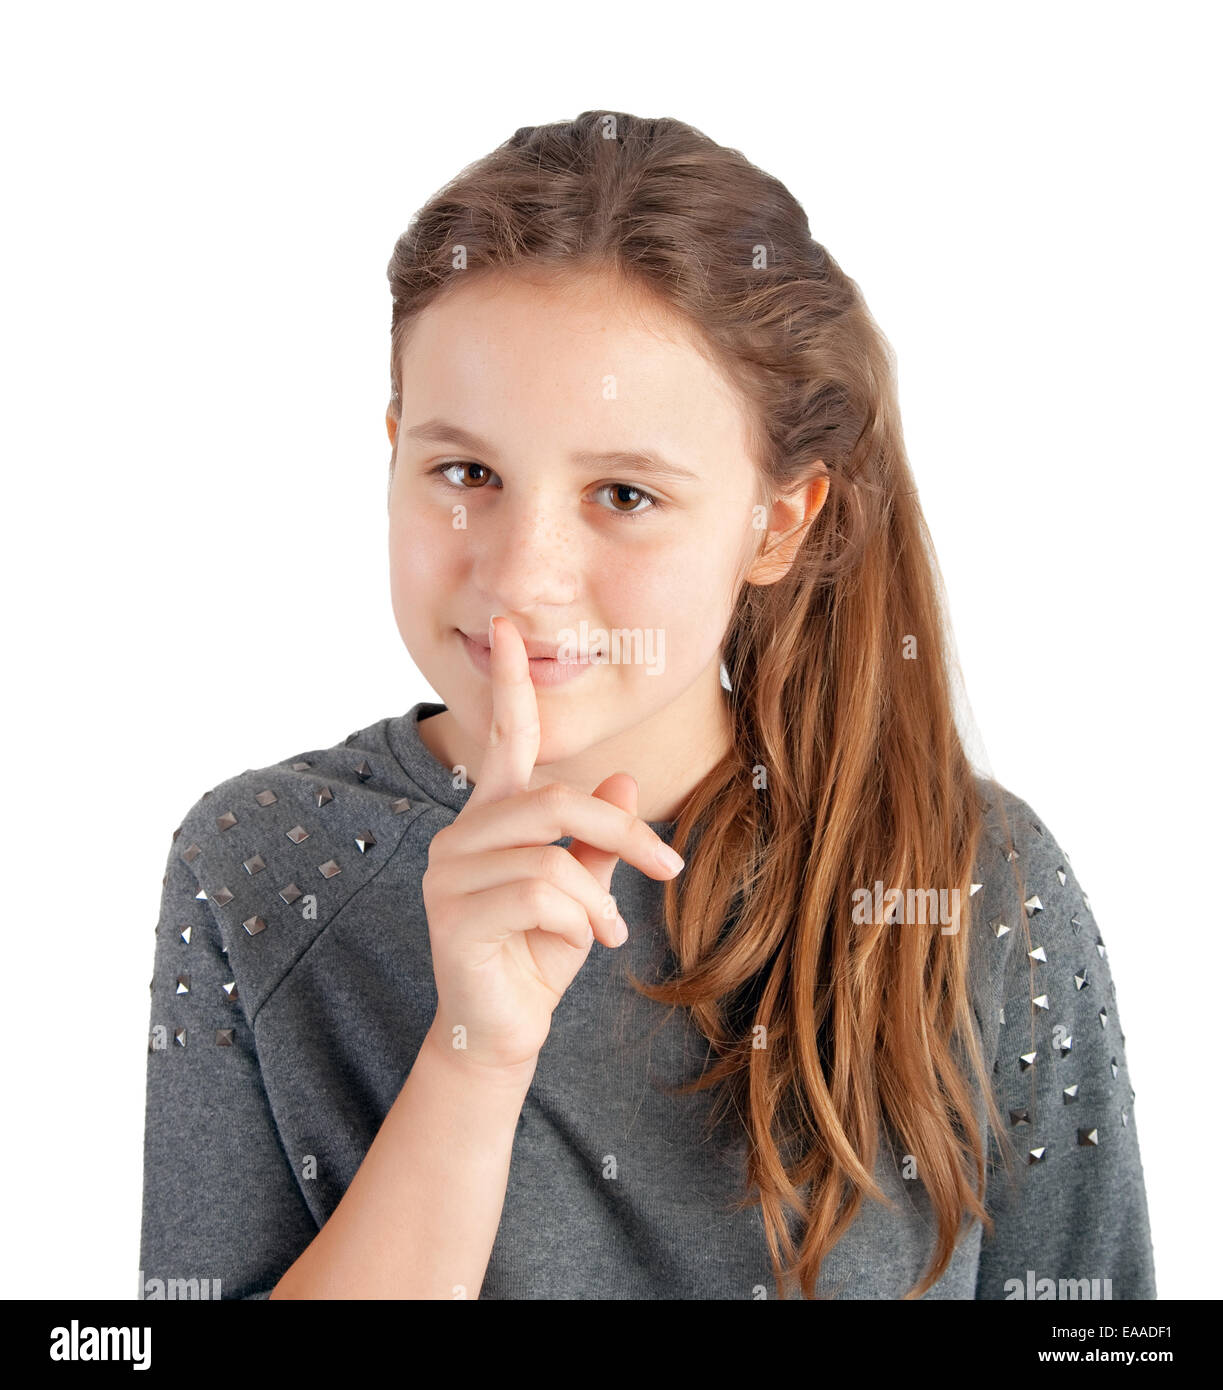 Porträt eines jungen Mädchens mit Finger auf den Lippen Stockfoto